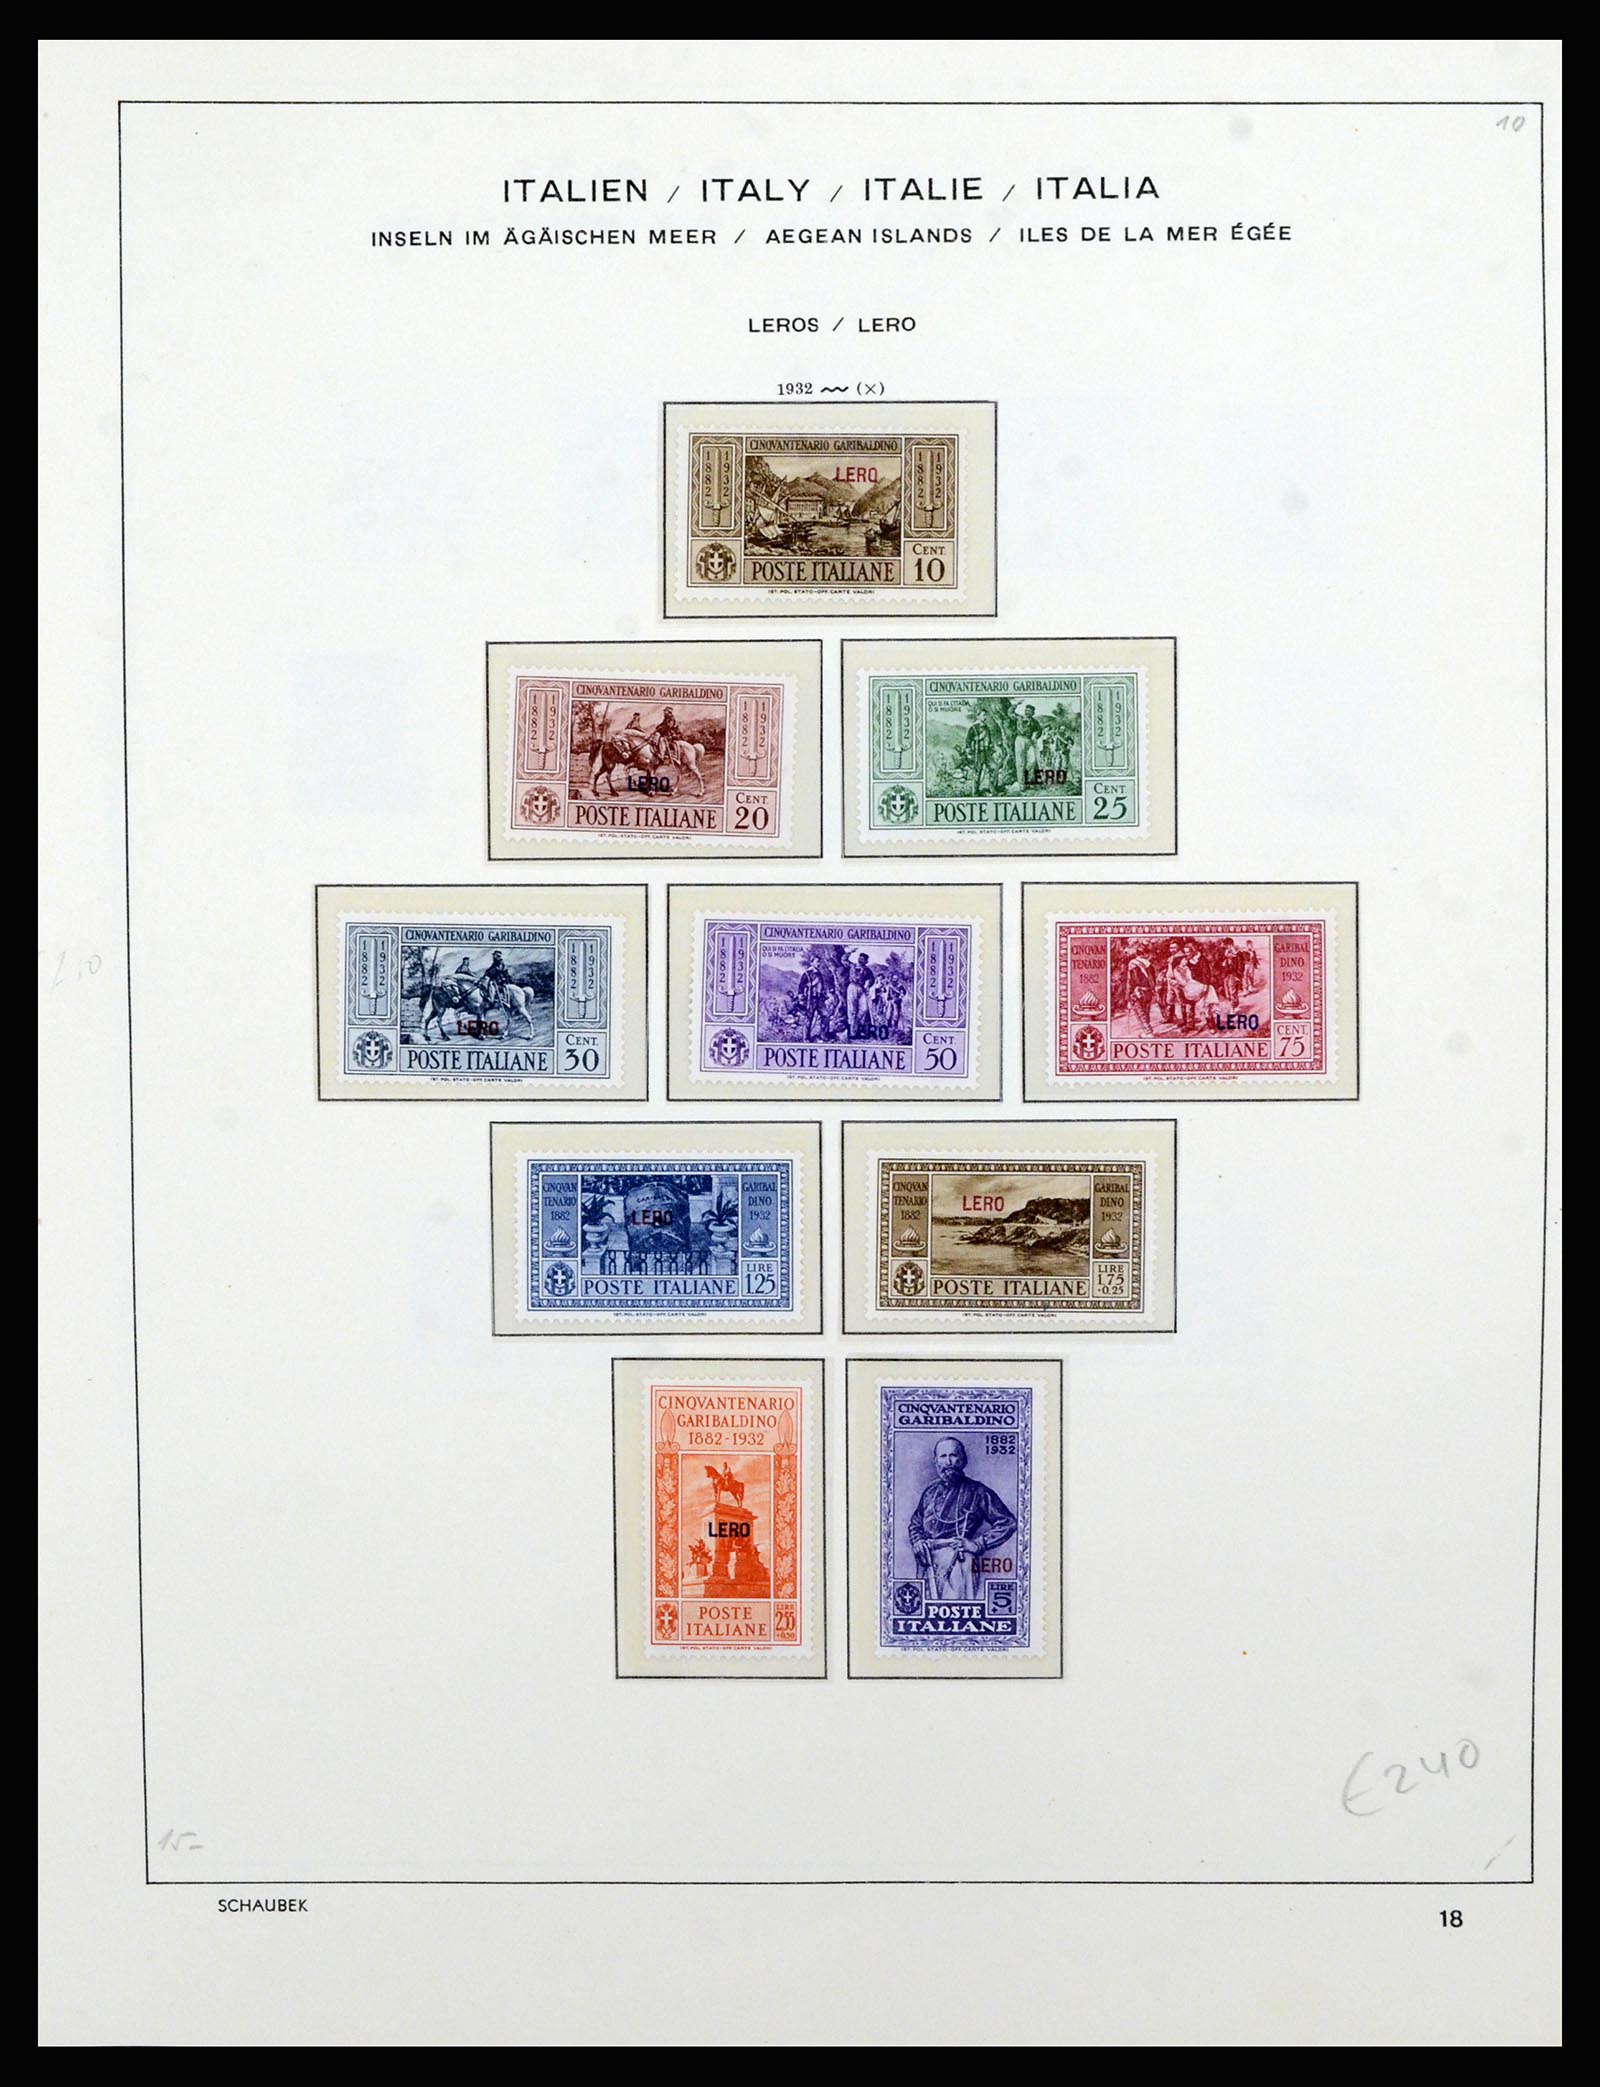 36577 044 - Stamp collection 36577 Italiaanse gebieden 1870-1940.